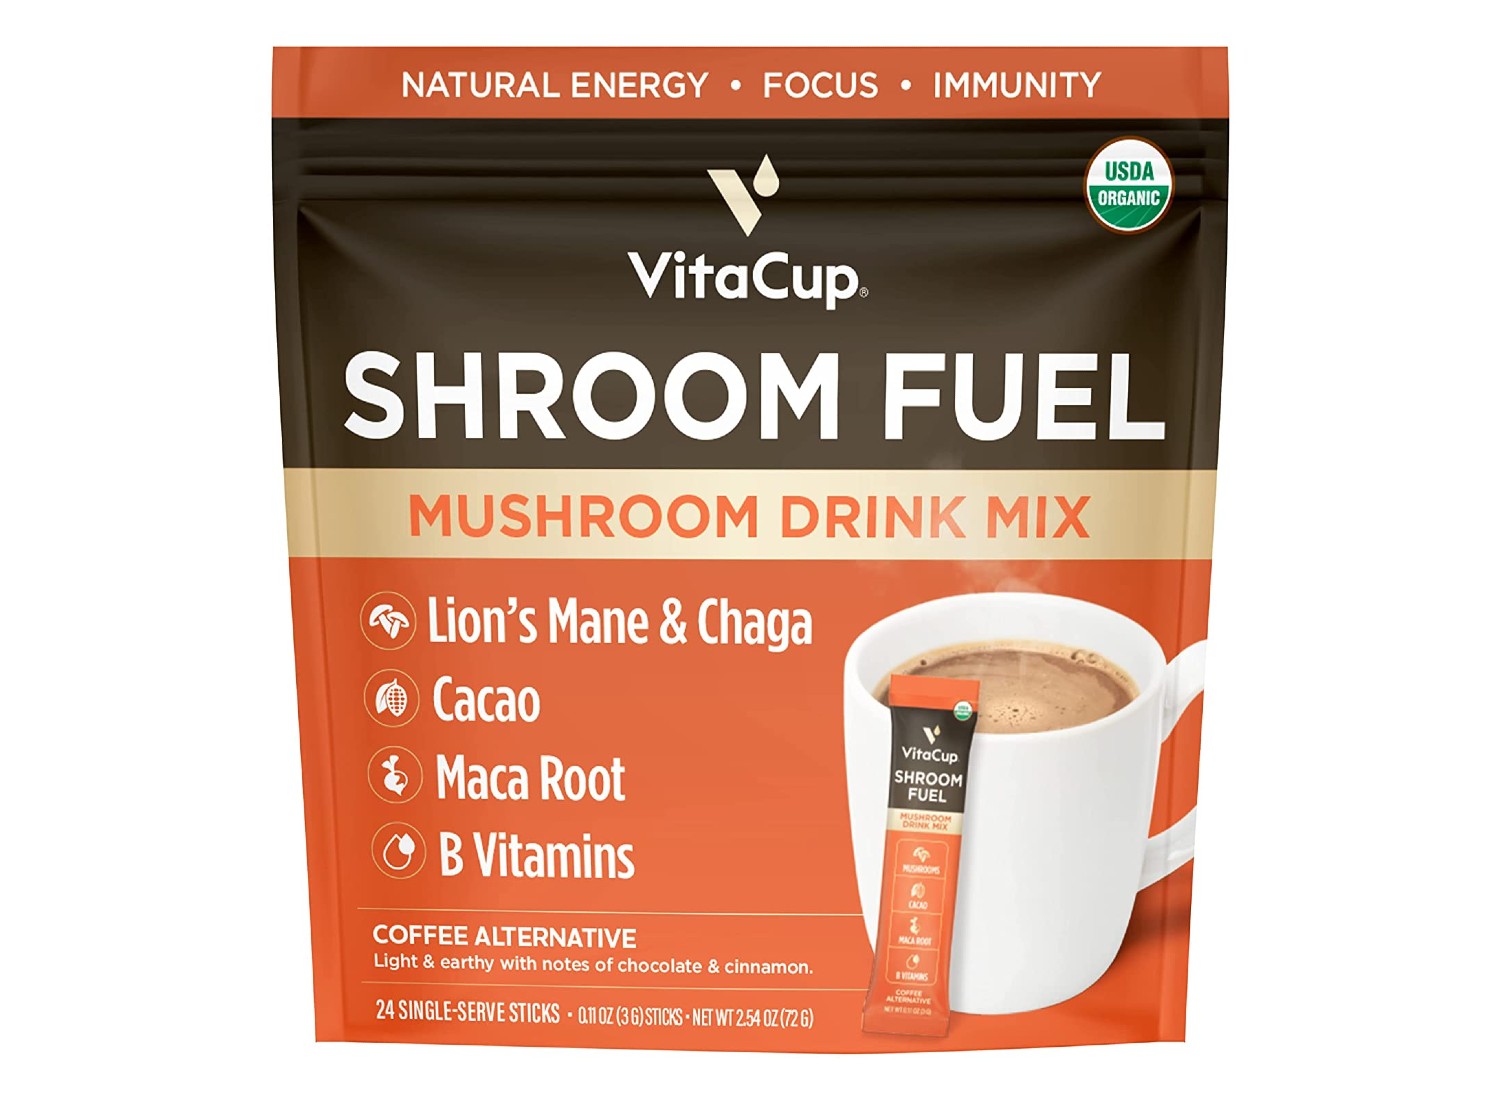 VitaCup Mushroom Coffee sold on Amazon